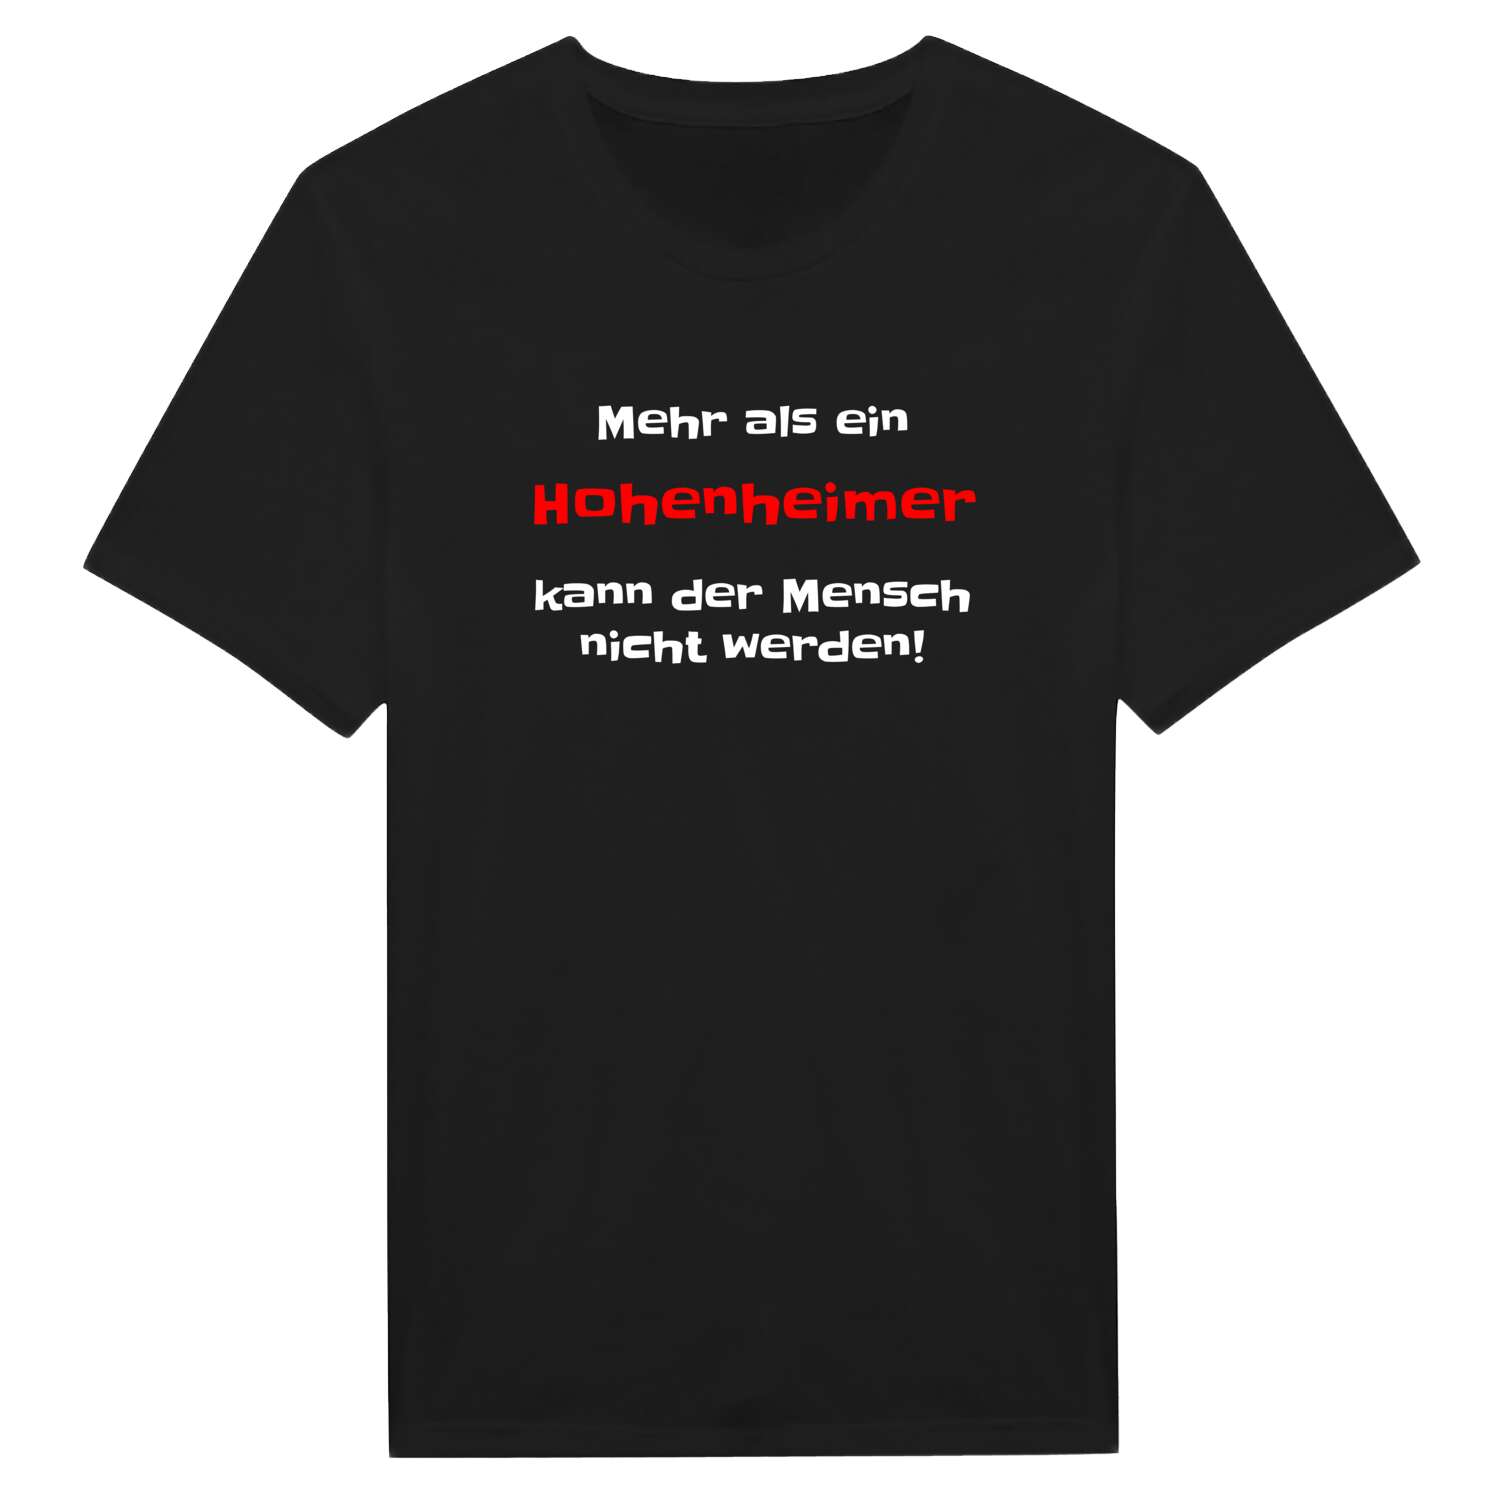 Hohenheim T-Shirt »Mehr als ein«